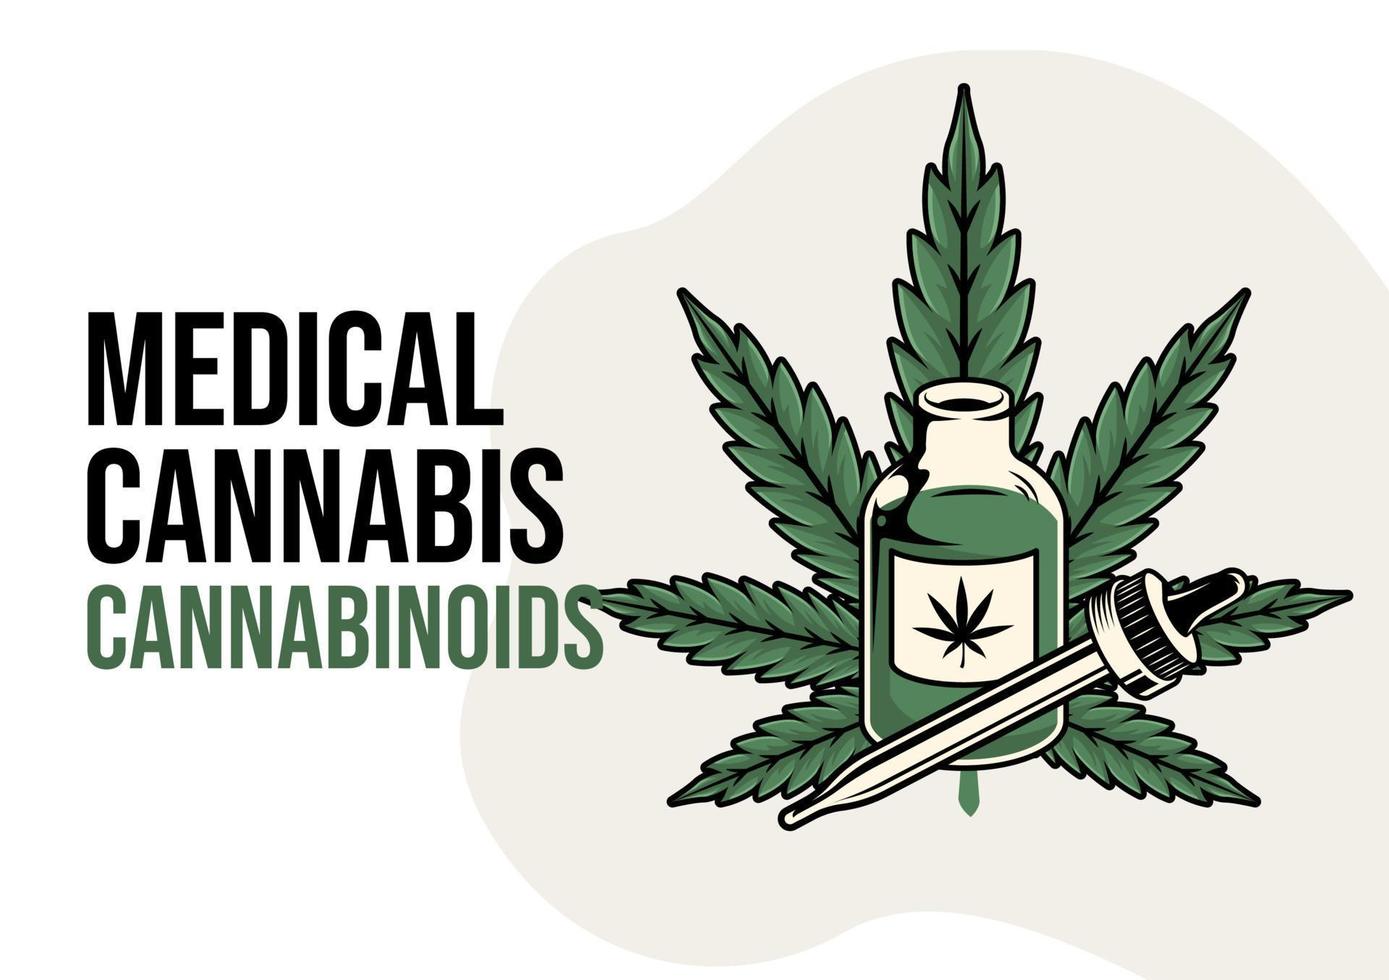 ilustración de cannabinoides. médica de la ilustración plana de cannabis. estilo de diseño plano. color moderno de la atención médica. pasos vectoriales 10 vector